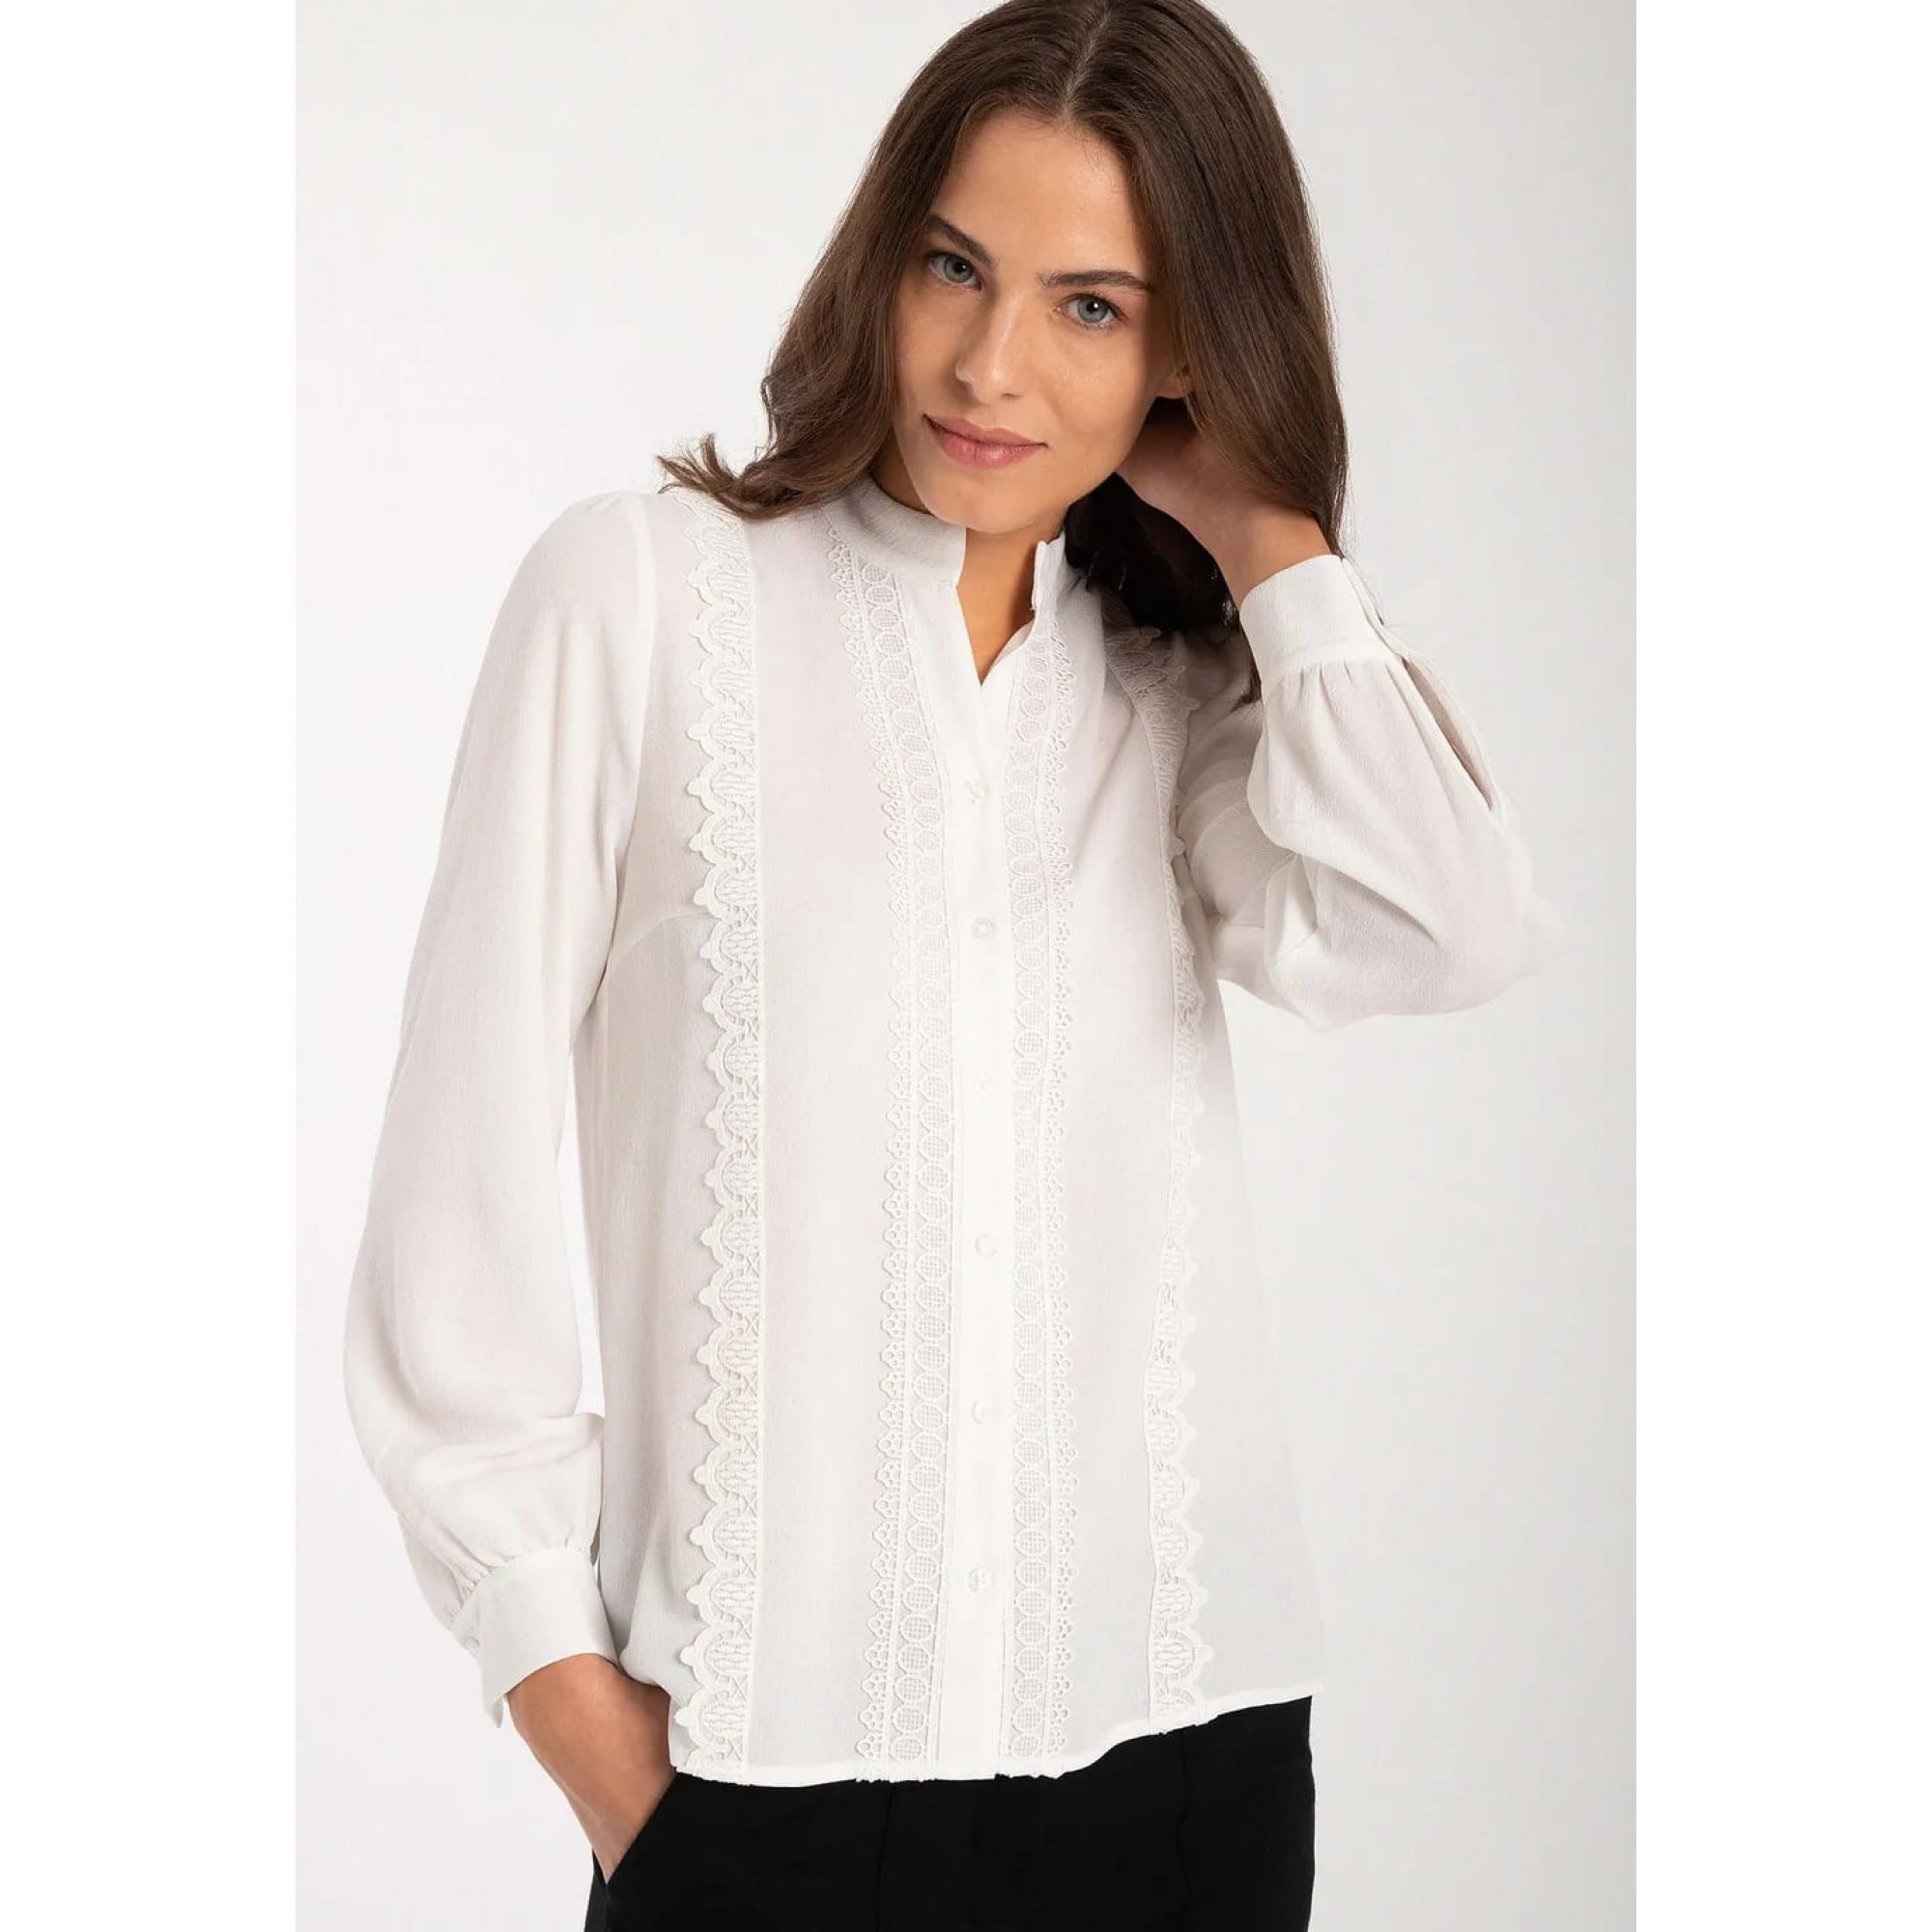 Женская белая блузка с кружевными деталями MORE \u0026 MORE купить винтернет-бутике GERMANY trend